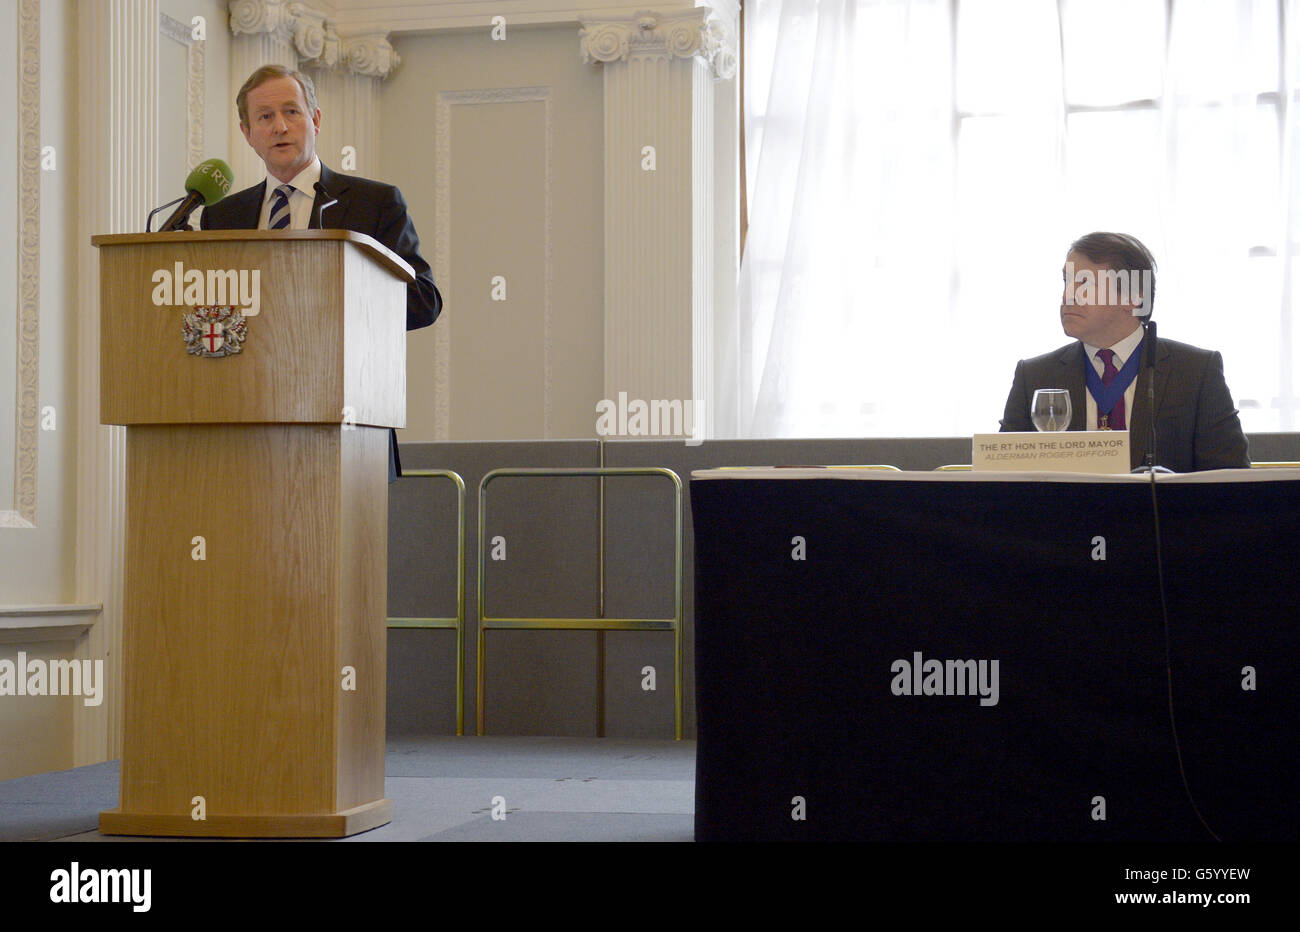 Taoiseach Enda Kenny (a sinistra) guardato dal Sindaco Lord di Londra Alderman Roger Gifford (a destra), si rivolge a un evento commerciale tenuto alla Mansion House nella città di Londra, dove ha esortato la Gran Bretagna a rimanere all'interno dell'Unione europea. Foto Stock